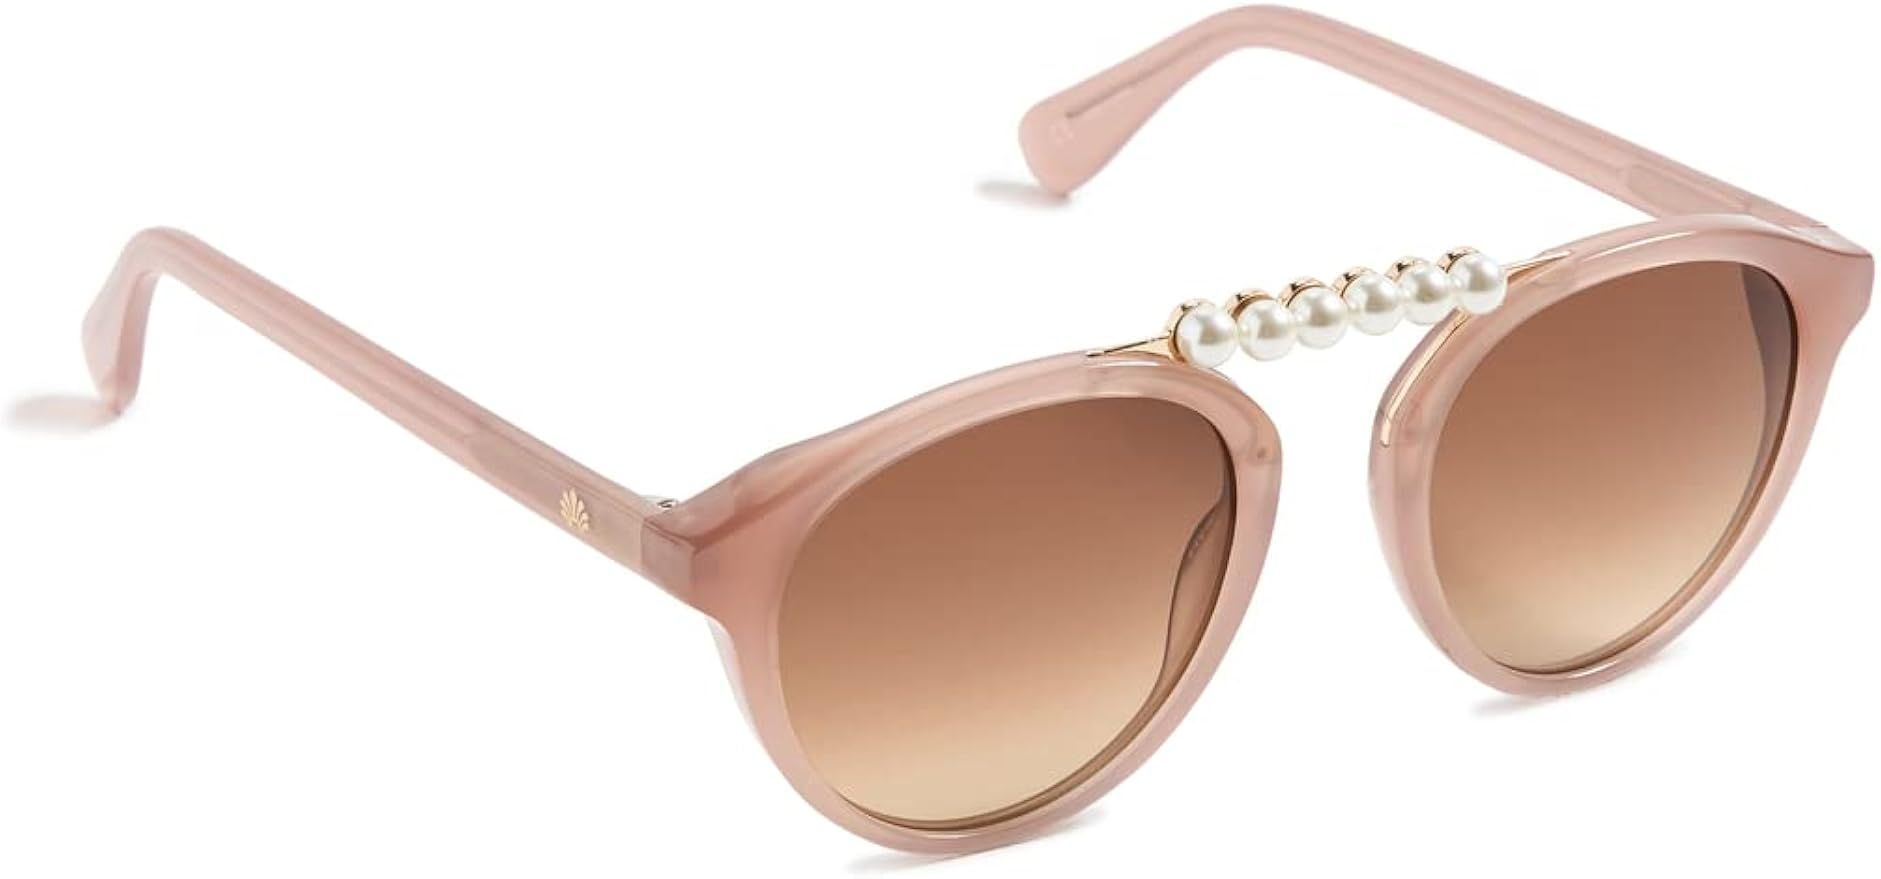 Lele Sadoughi Pearl Courtside Sunglasses | Amazon (US)